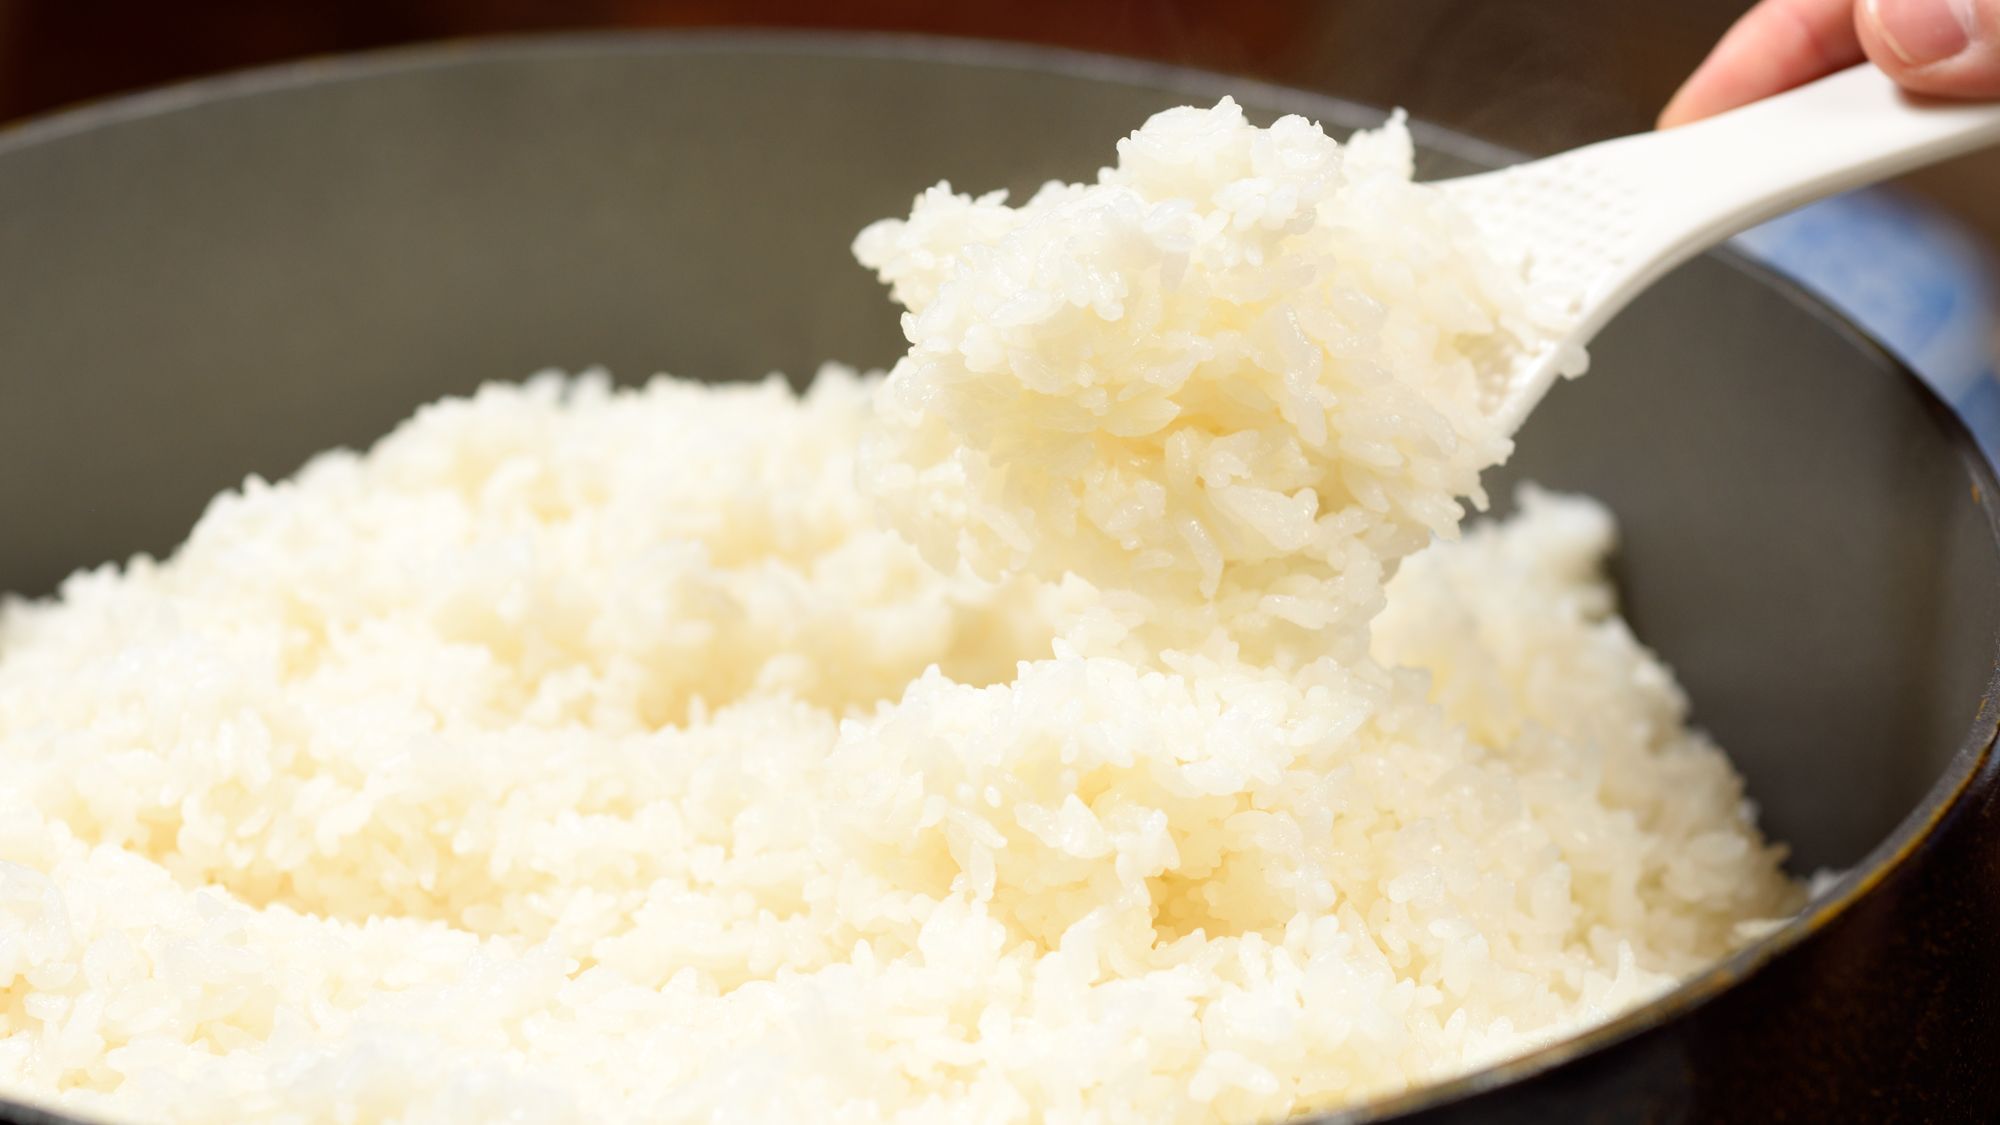 ふっくらと炊き上げた岩手県産「ひとめぼれ」。岩手のお米をご賞味ください